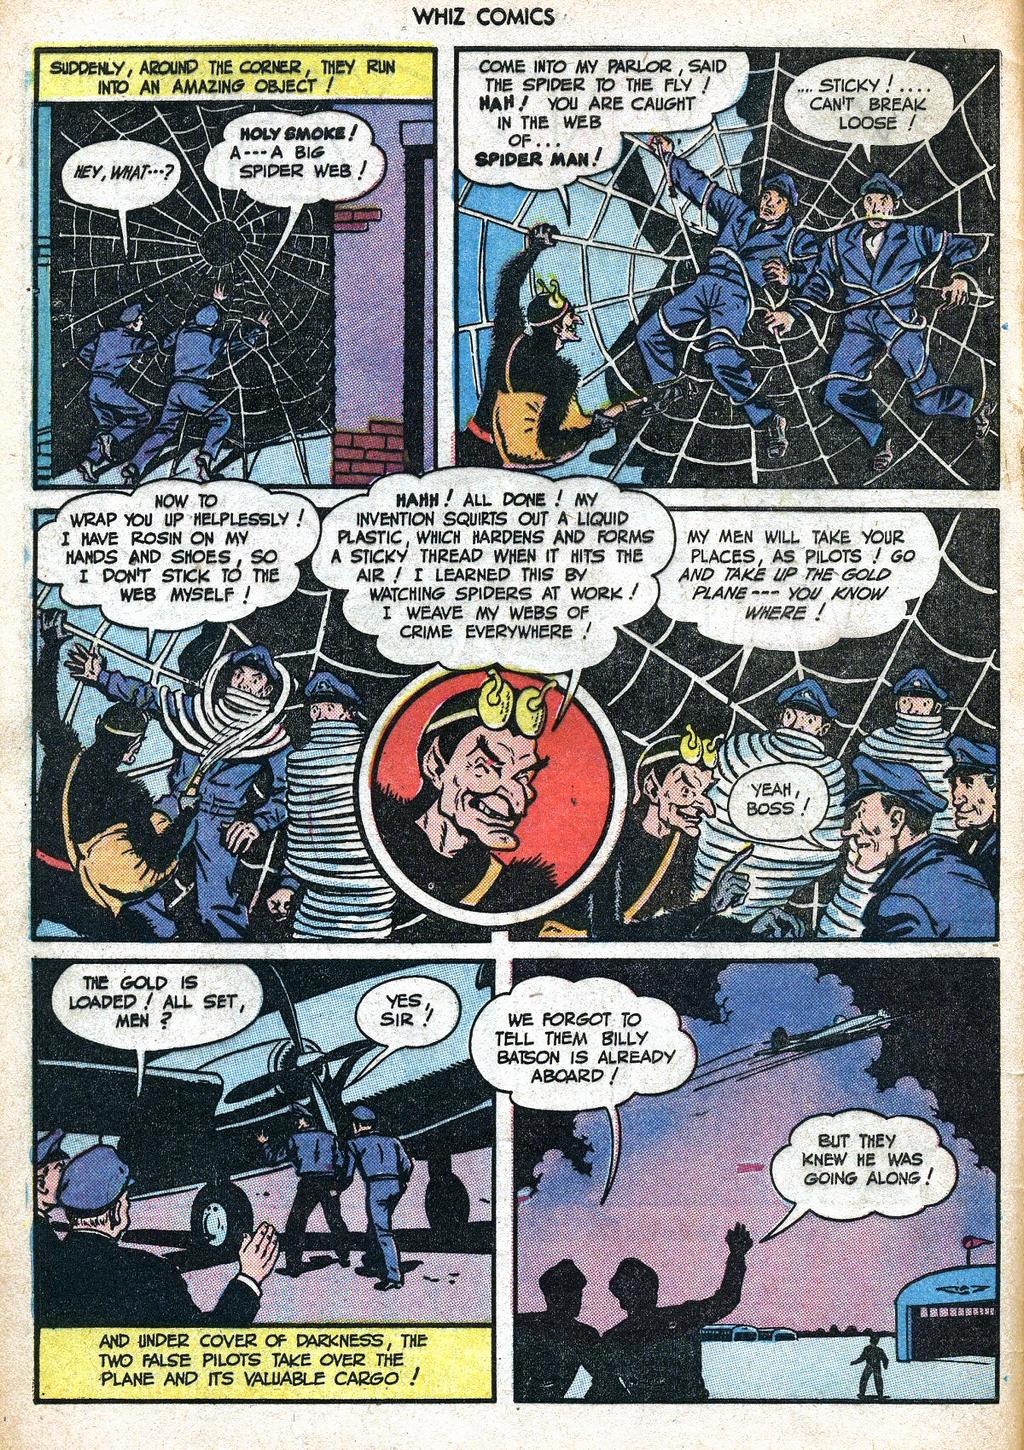 O Homem Aranha original enfrenta o Capitão Marvel